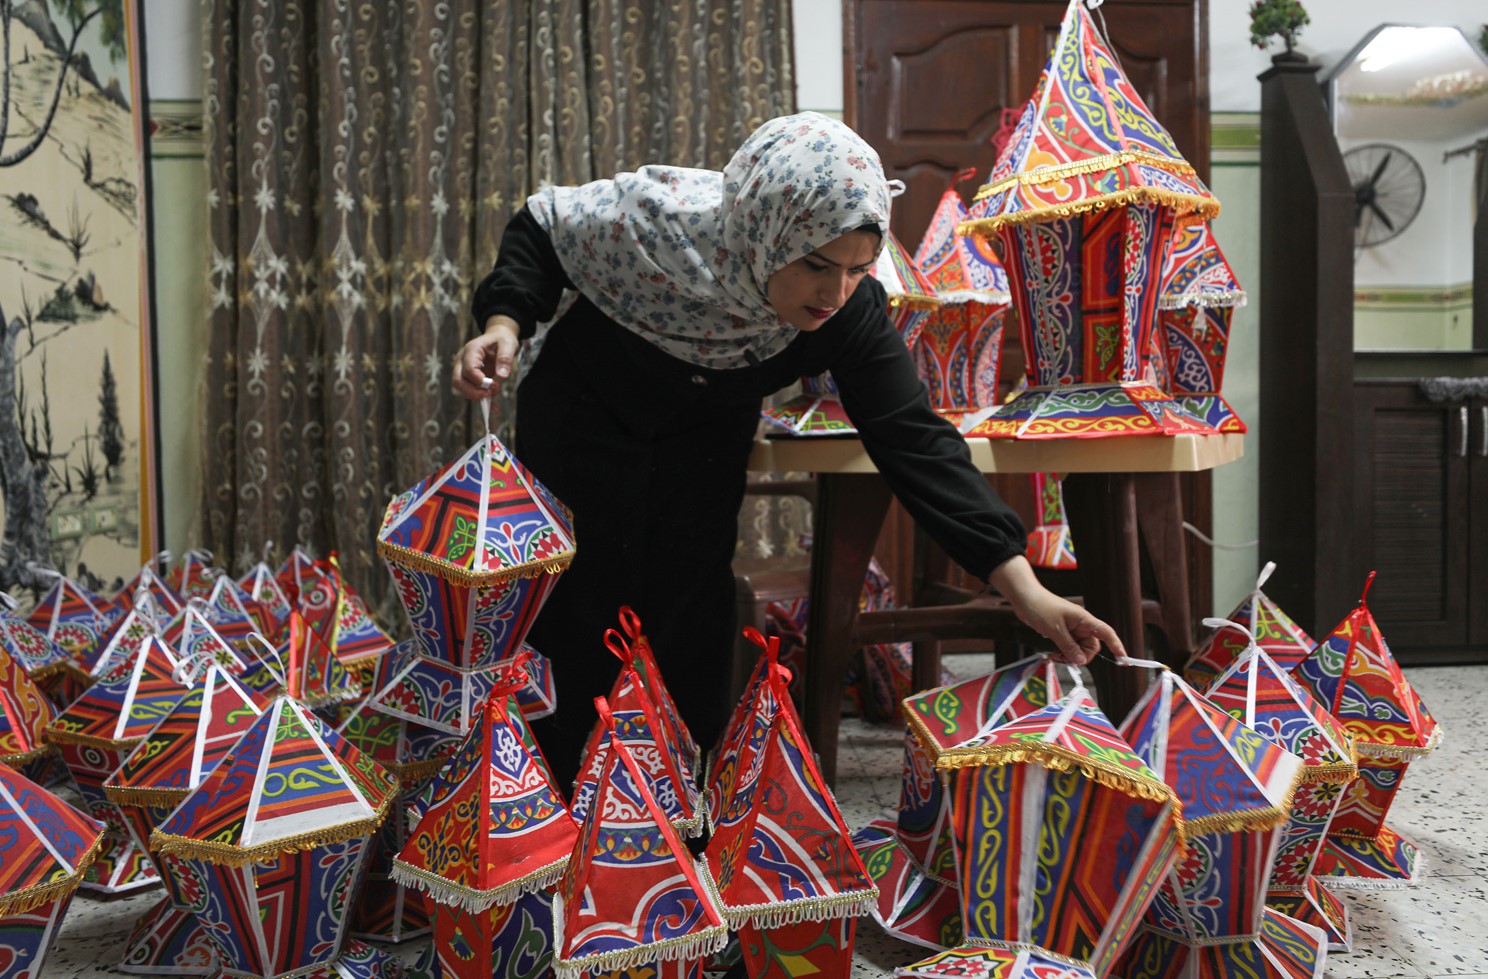  İşgal rejimi ablukası altındaki Gazze Şeridi'nde bazı aileler, Ramazan ayının önemli simgelerinden "Ramazan Feneri (Fanus)" yapımına hummalı bir mesai harcıyor.

Ramazan fenerleri, birçok Arap ülkesinde bu mübarek ayda sokakları süsleyen, evlere renk katan yaygın bir gelenek haline geldi.